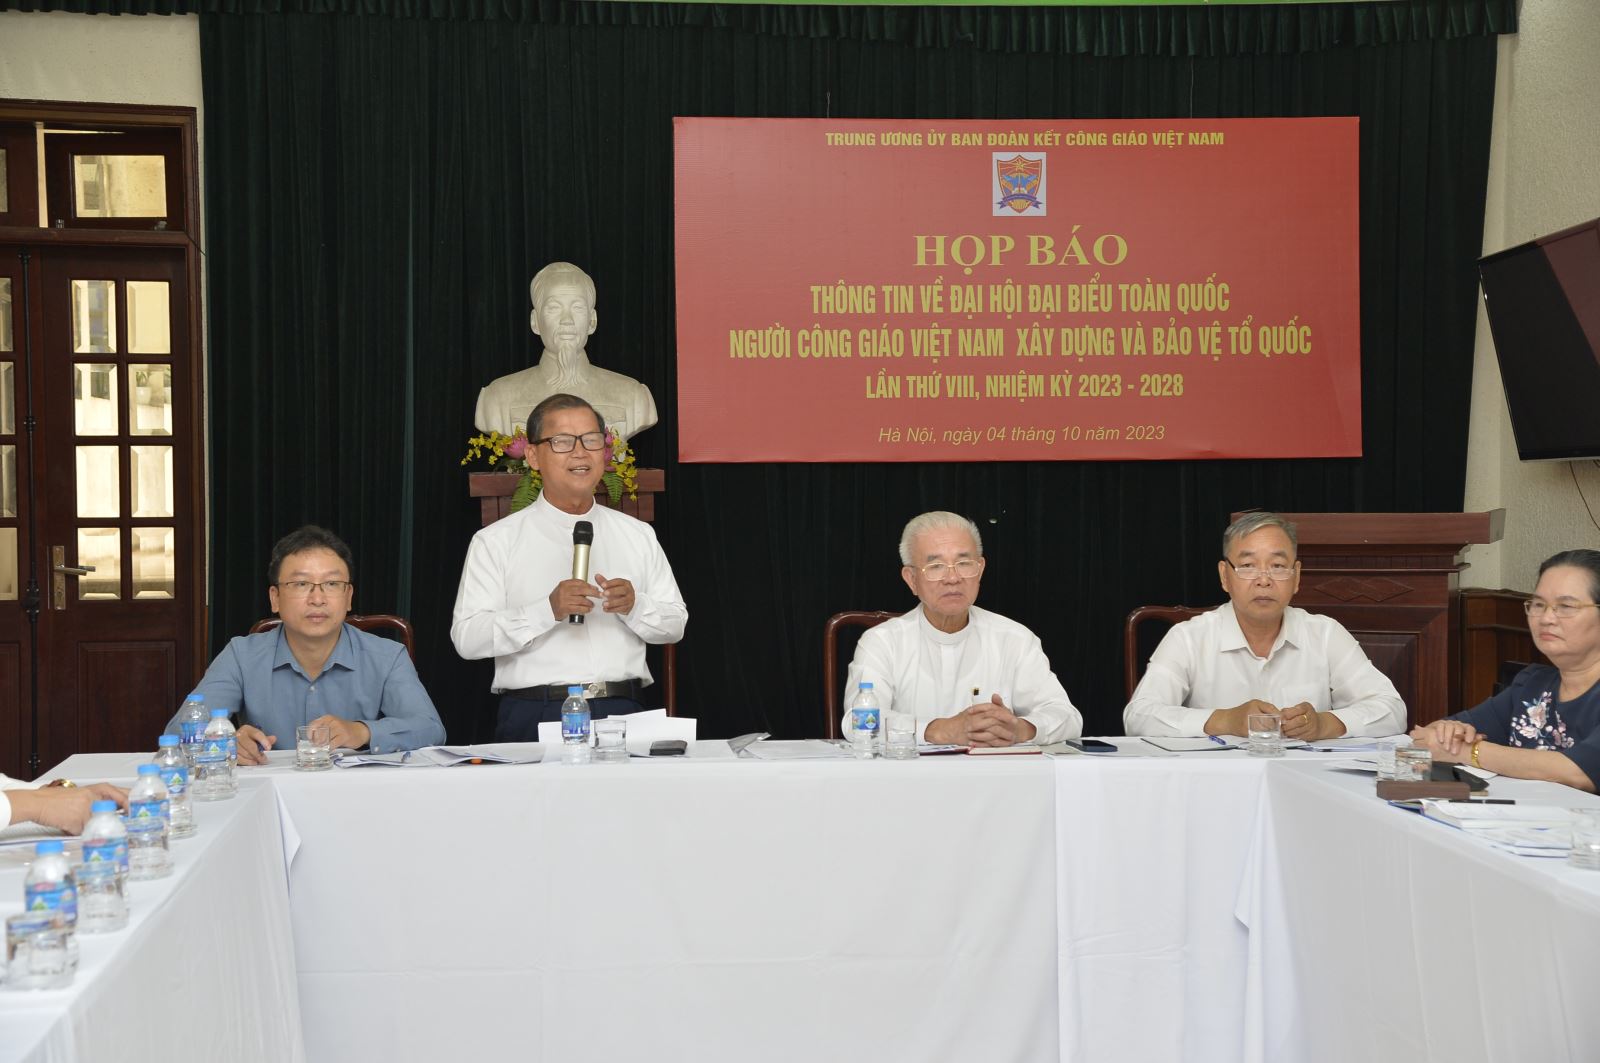 Linh mục Gioan Baotixita Nguyễn Văn Riễn là Phó Chủ tịch kiêm Tổng Thư ký Trung ương Ủy ban ĐKCG Việt Nam phát biểu tại cuộc họp